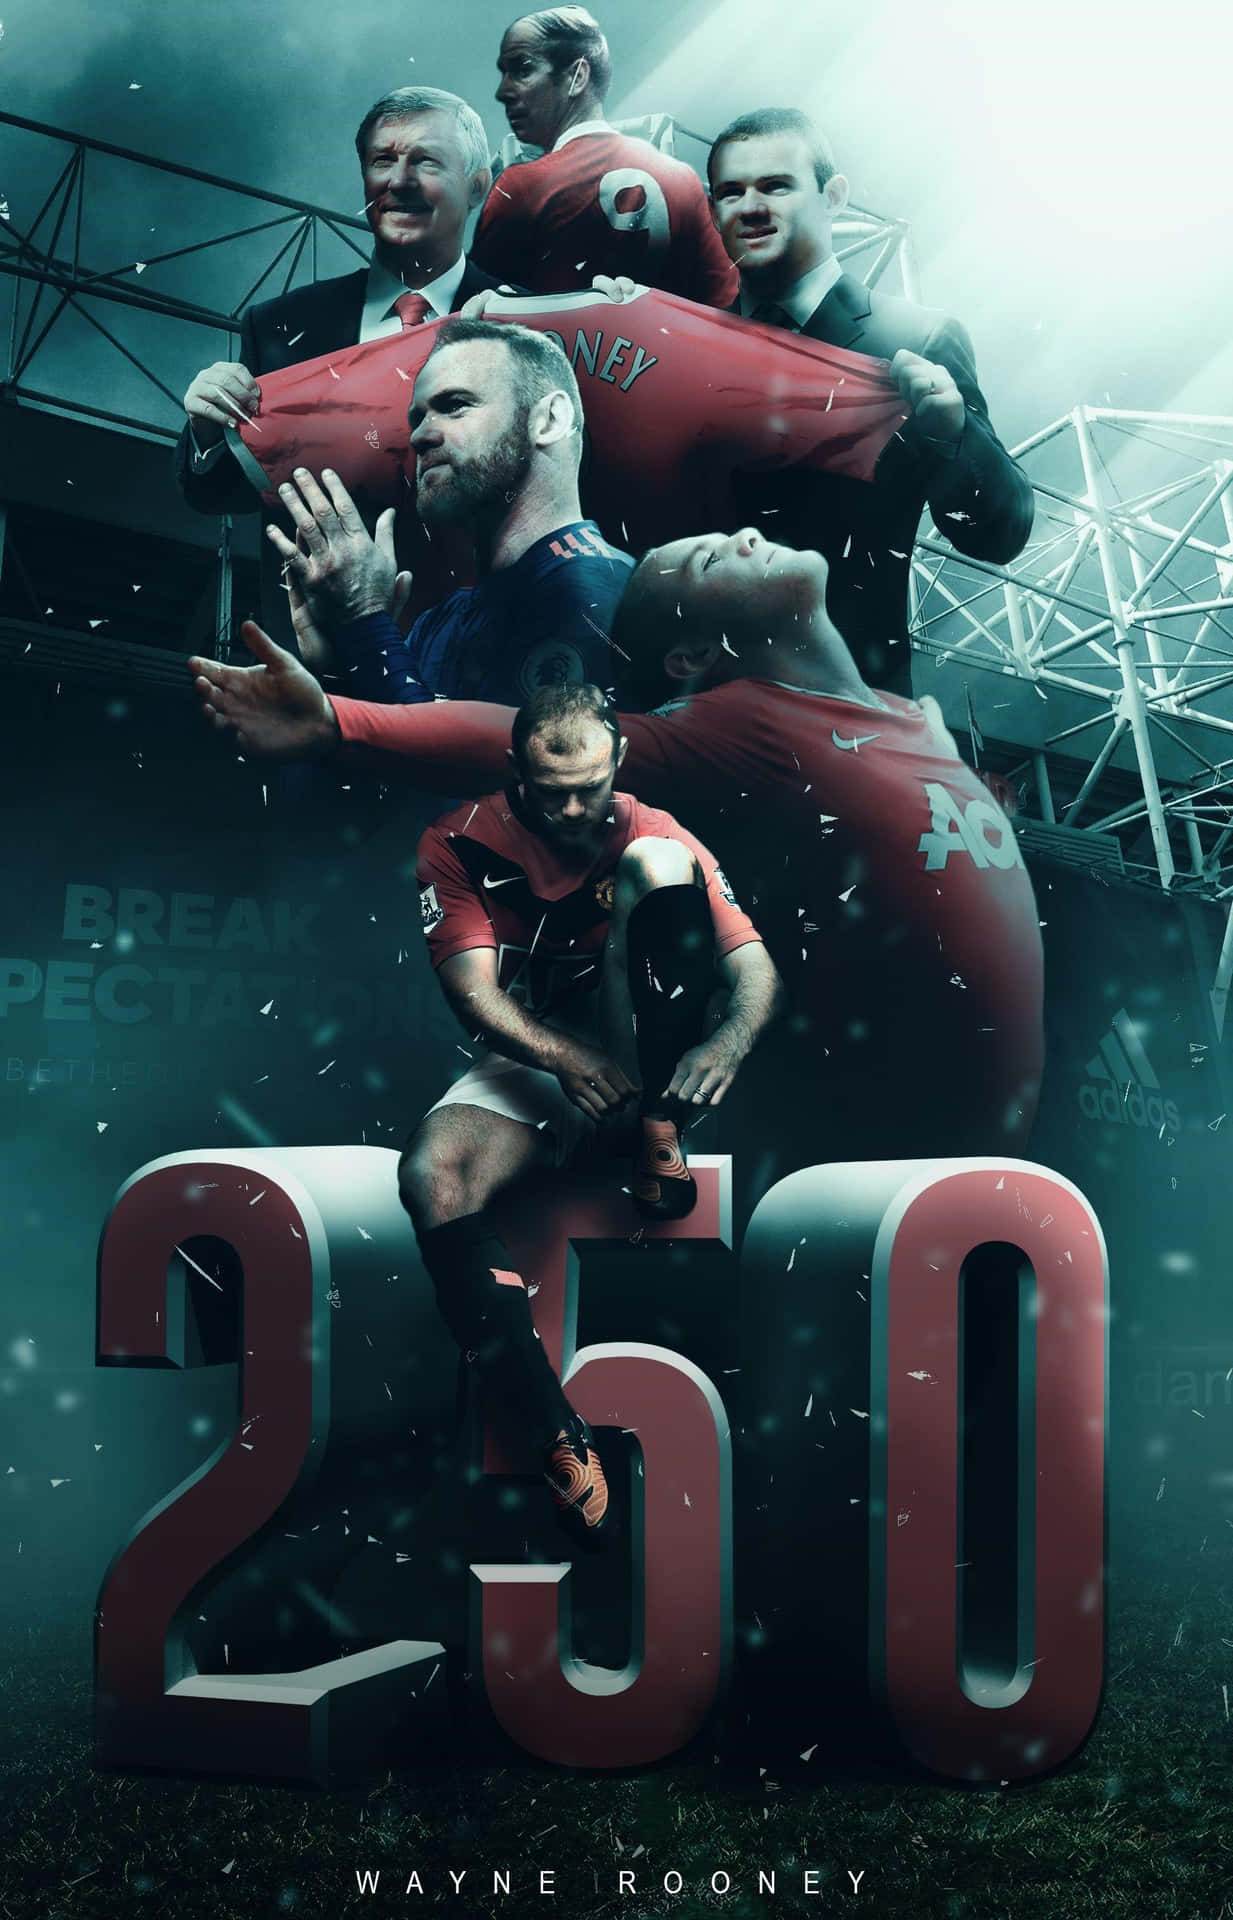 Immaginedel Poster Di Wayne Rooney